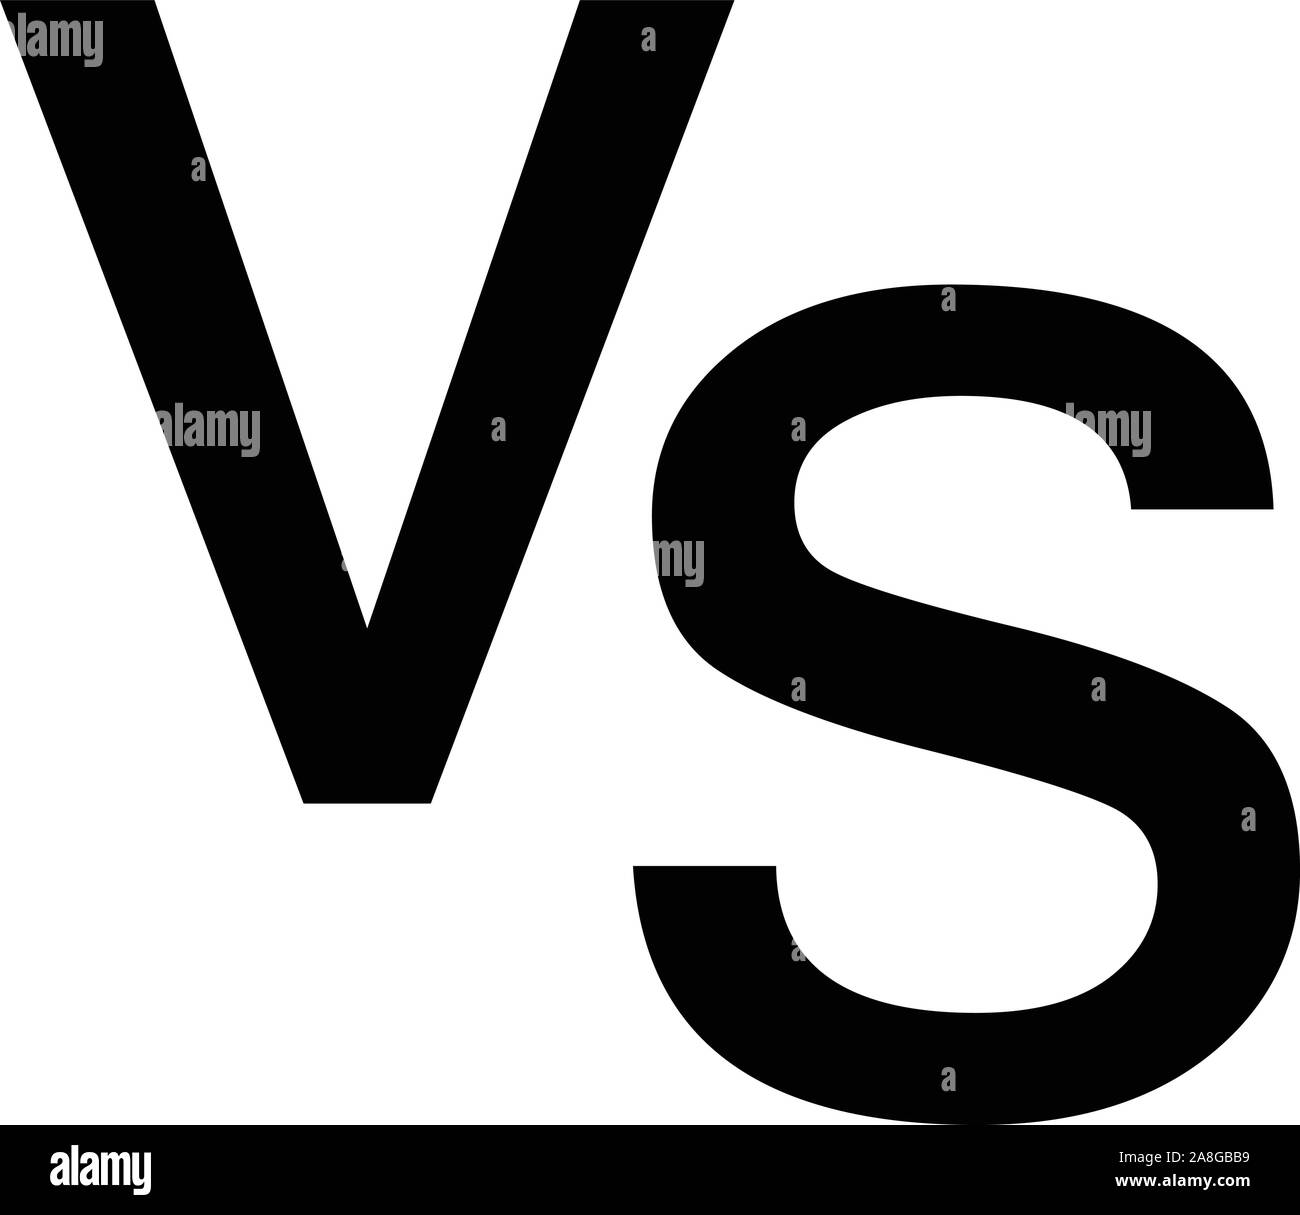 Versus vs Buchstaben Symbol auf weißem Hintergrund. Flat Style. versus Logo für Ihre Web site Design, Logo, App, UI. versus Symbol. Im Vergleich zu unterzeichnen. Stock Vektor